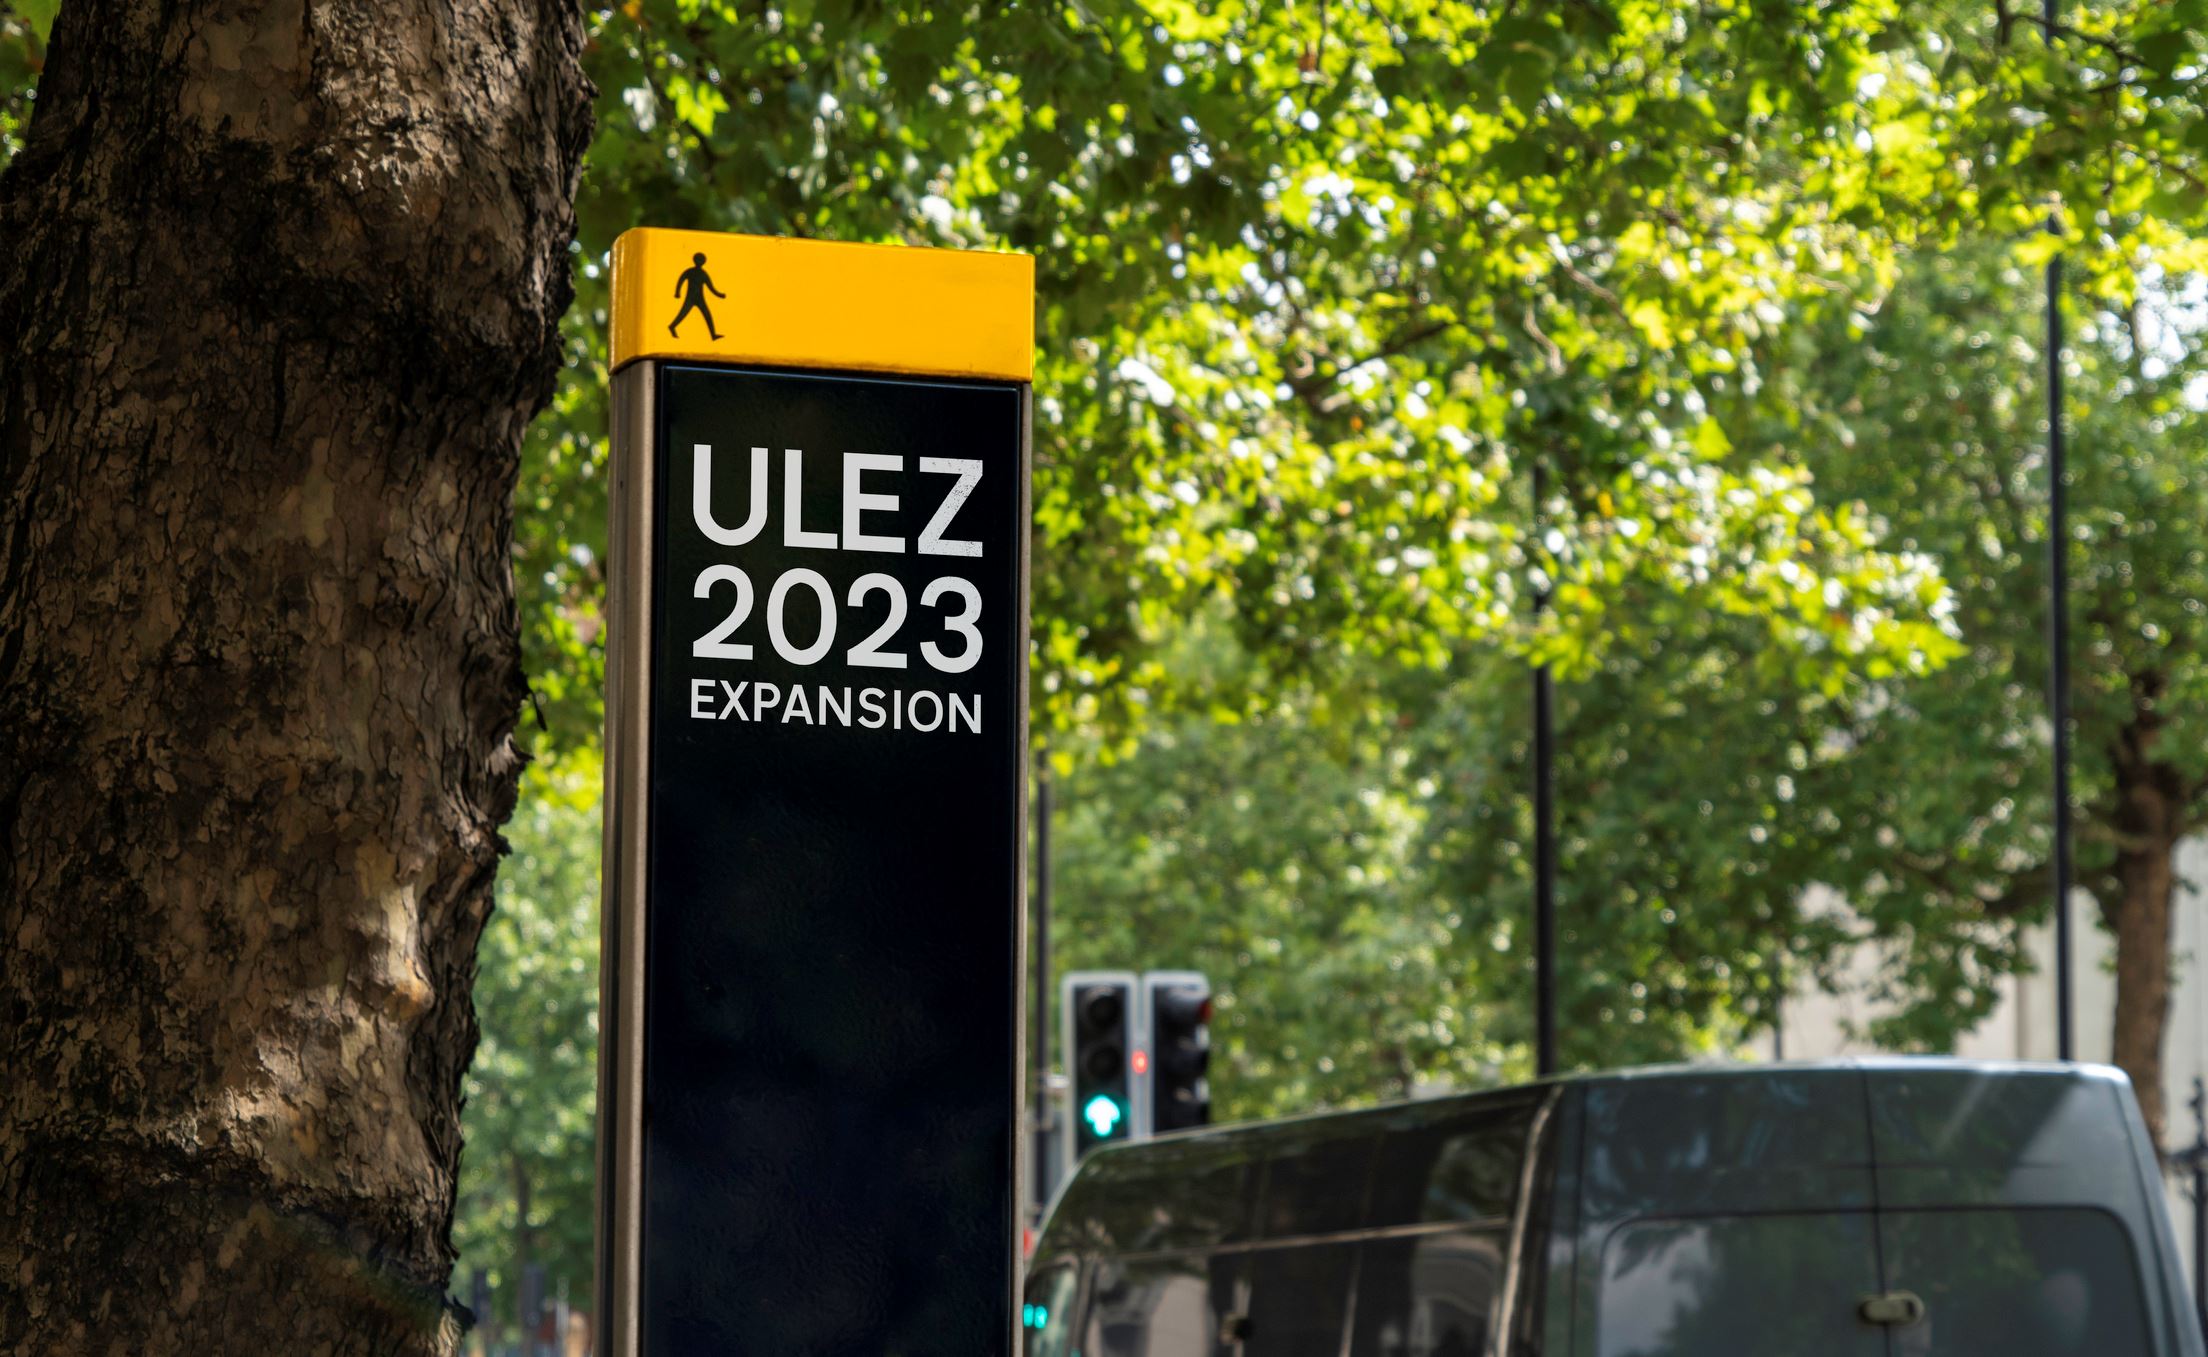 ULEZ Expansion